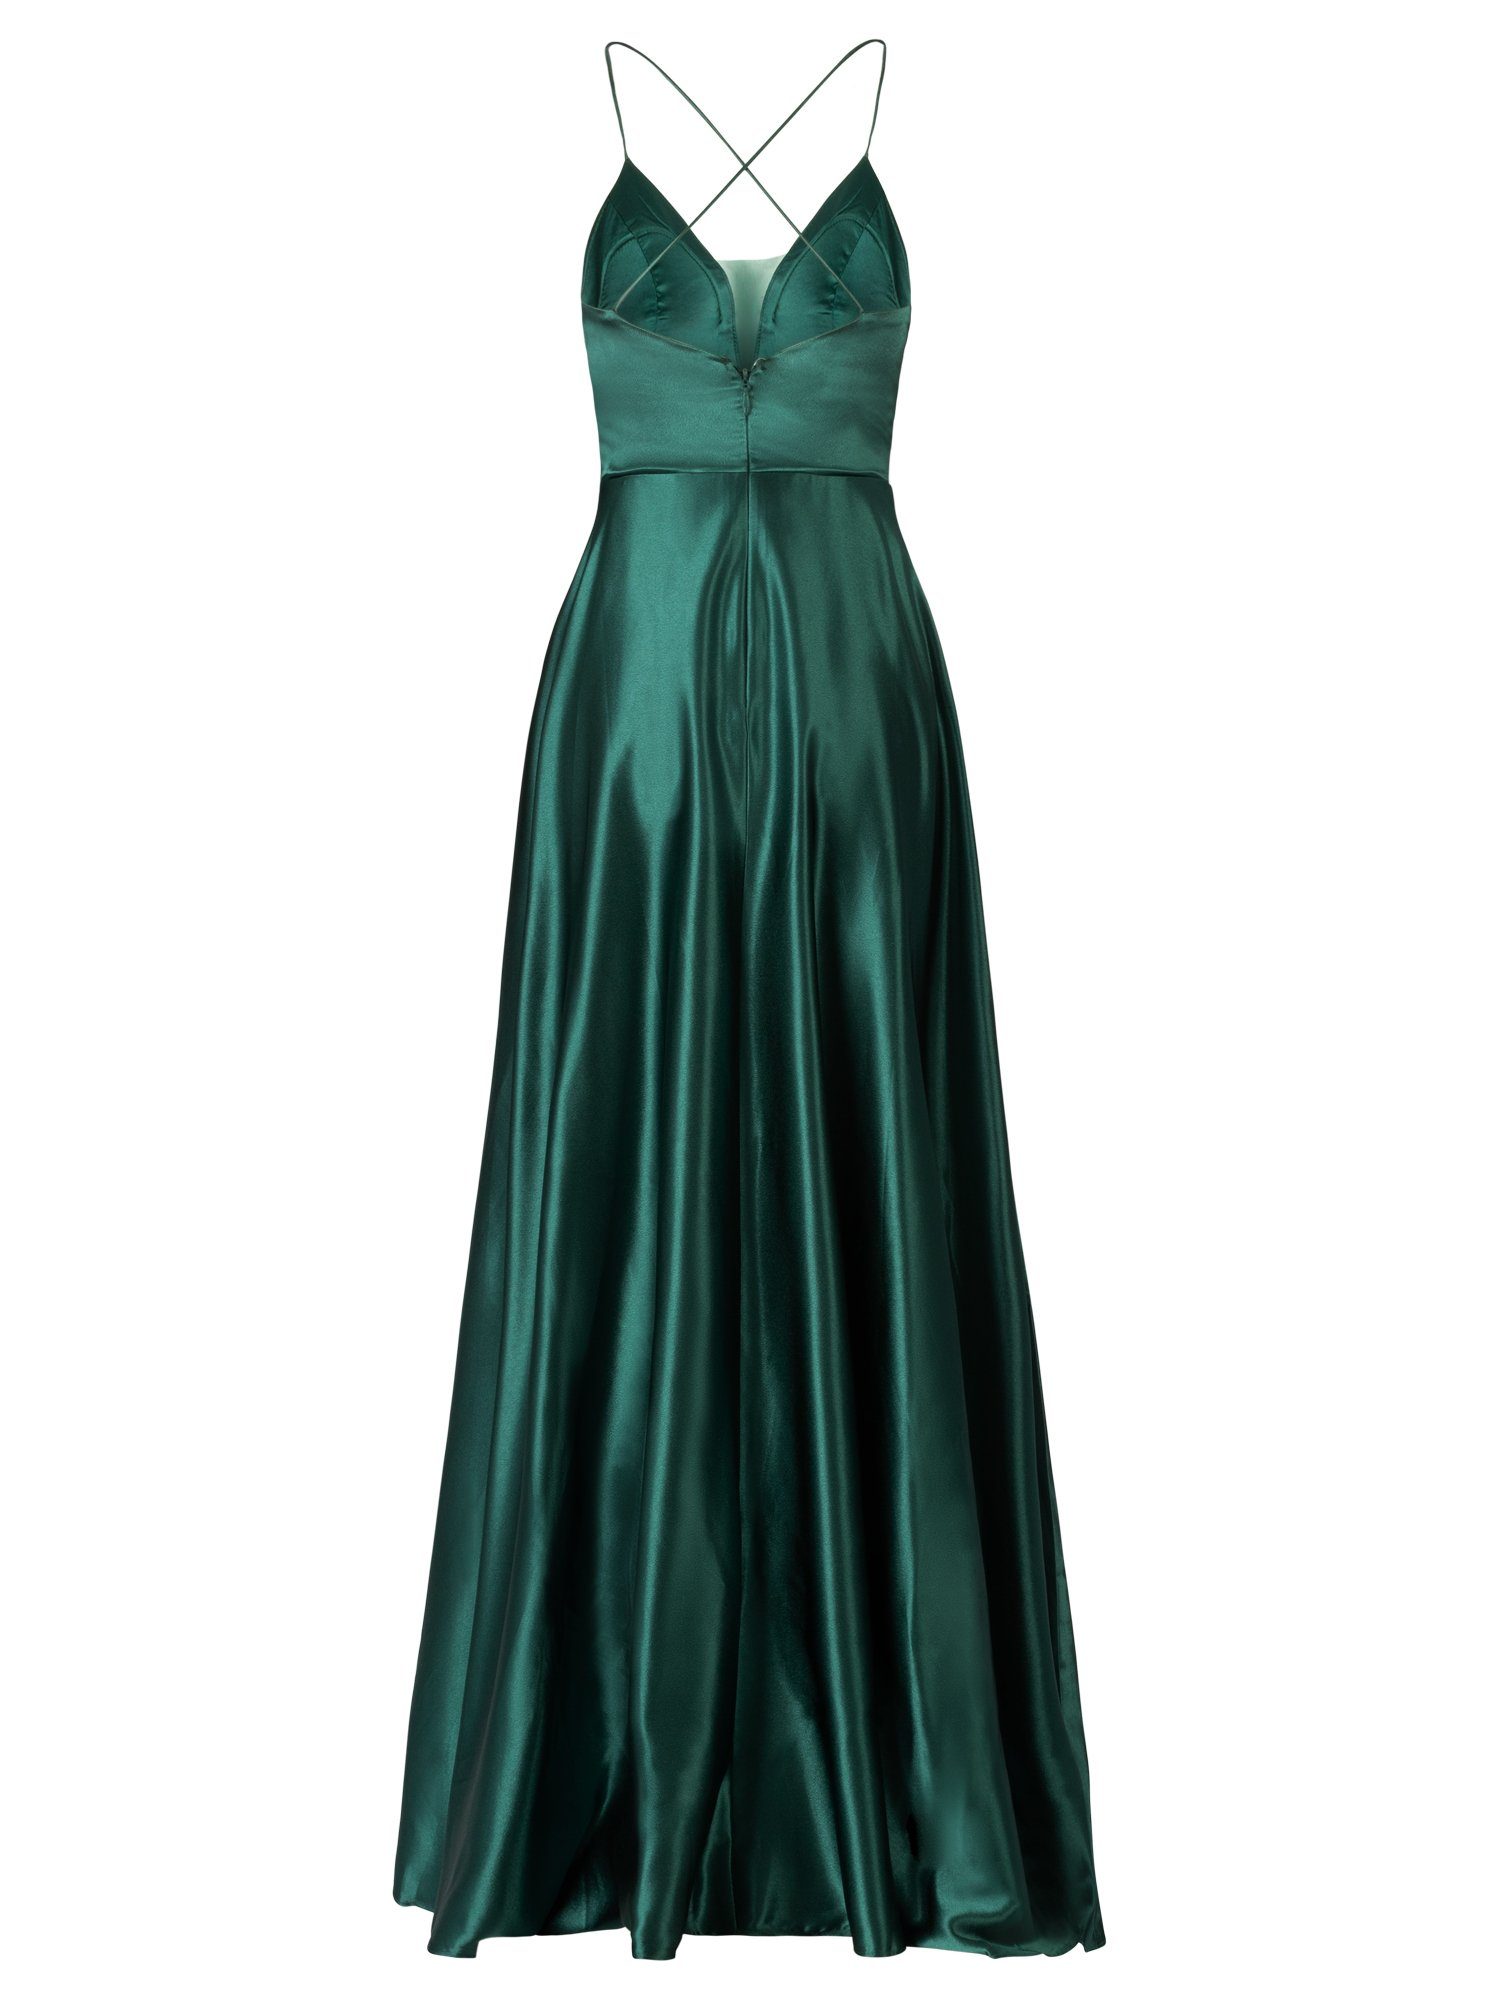 Bündelverarbeitung Abendkleid Apart emerald elastischer mit